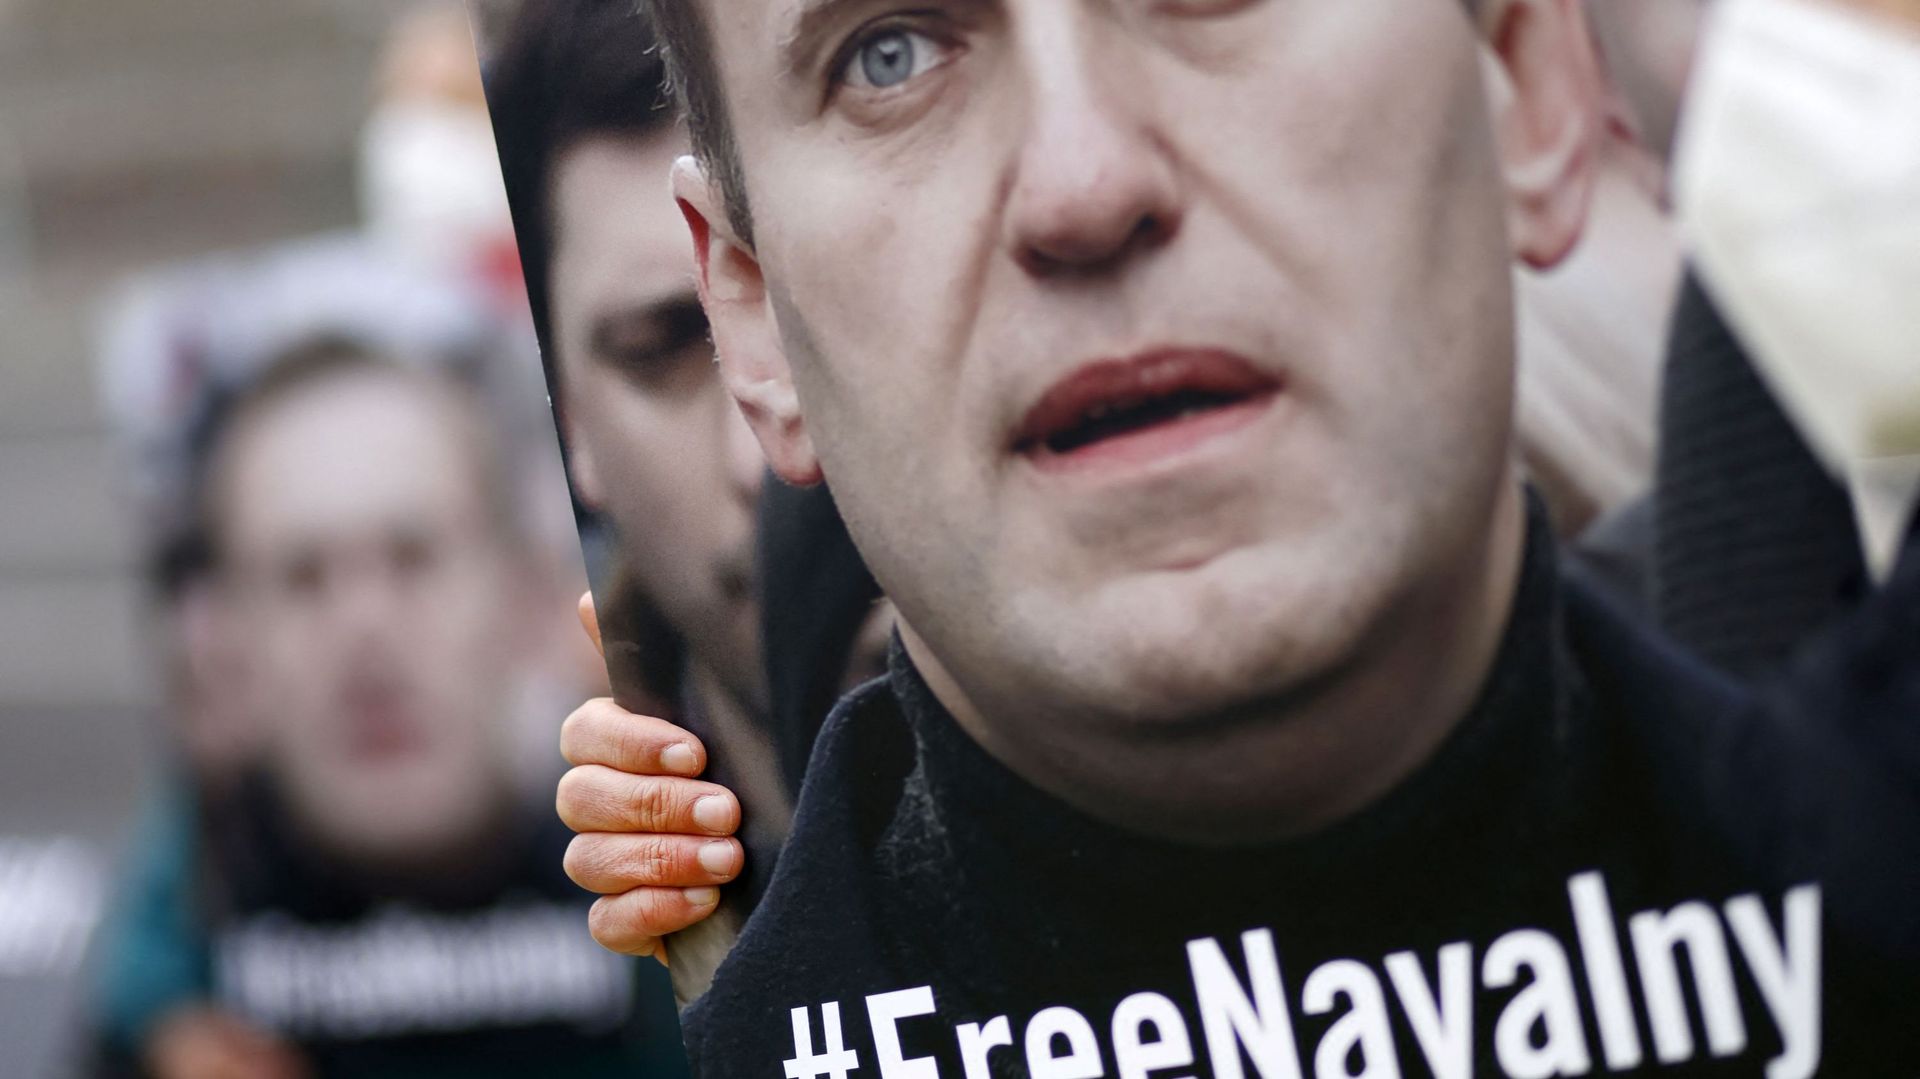 La justice russe suspend les activités des organisations de l'opposant Navalny